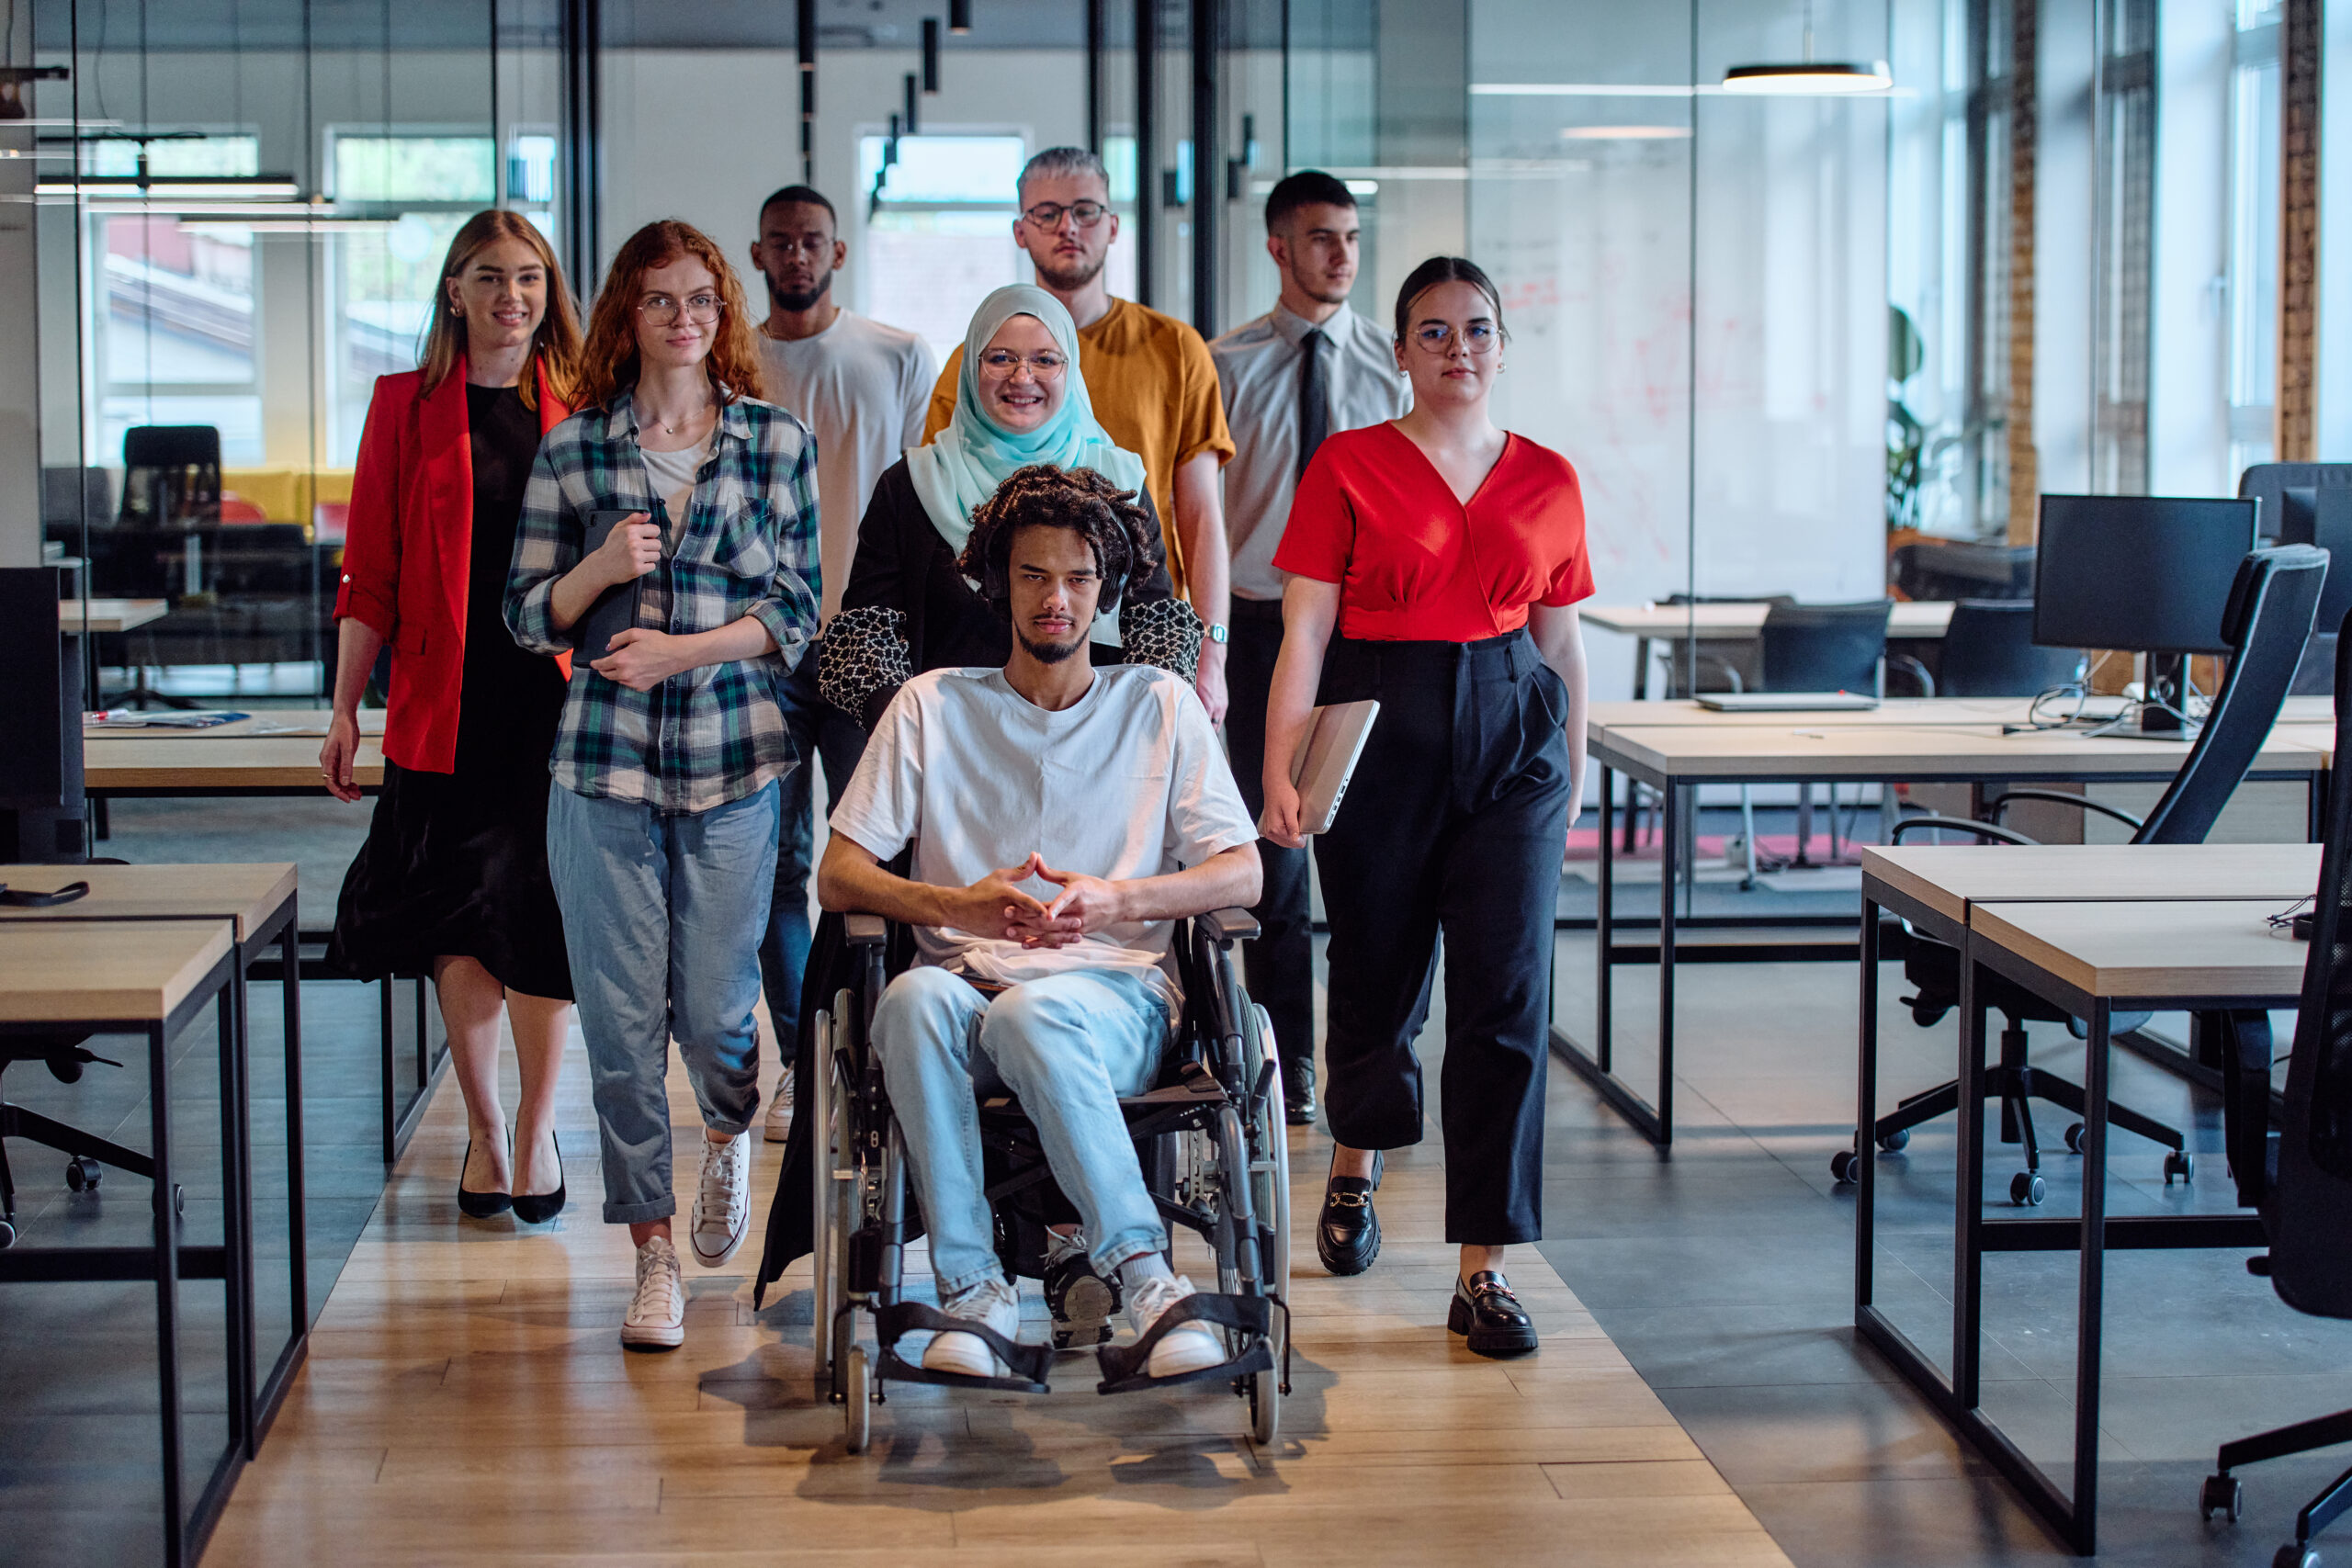 Un groupe diversifié de jeunes hommes d'affaires se rassemble dans le bureau vitré d'une startup moderne, mettant en vedette une personne en fauteuil roulant, un jeune homme afro-américain et une femme musulmane voilée.
